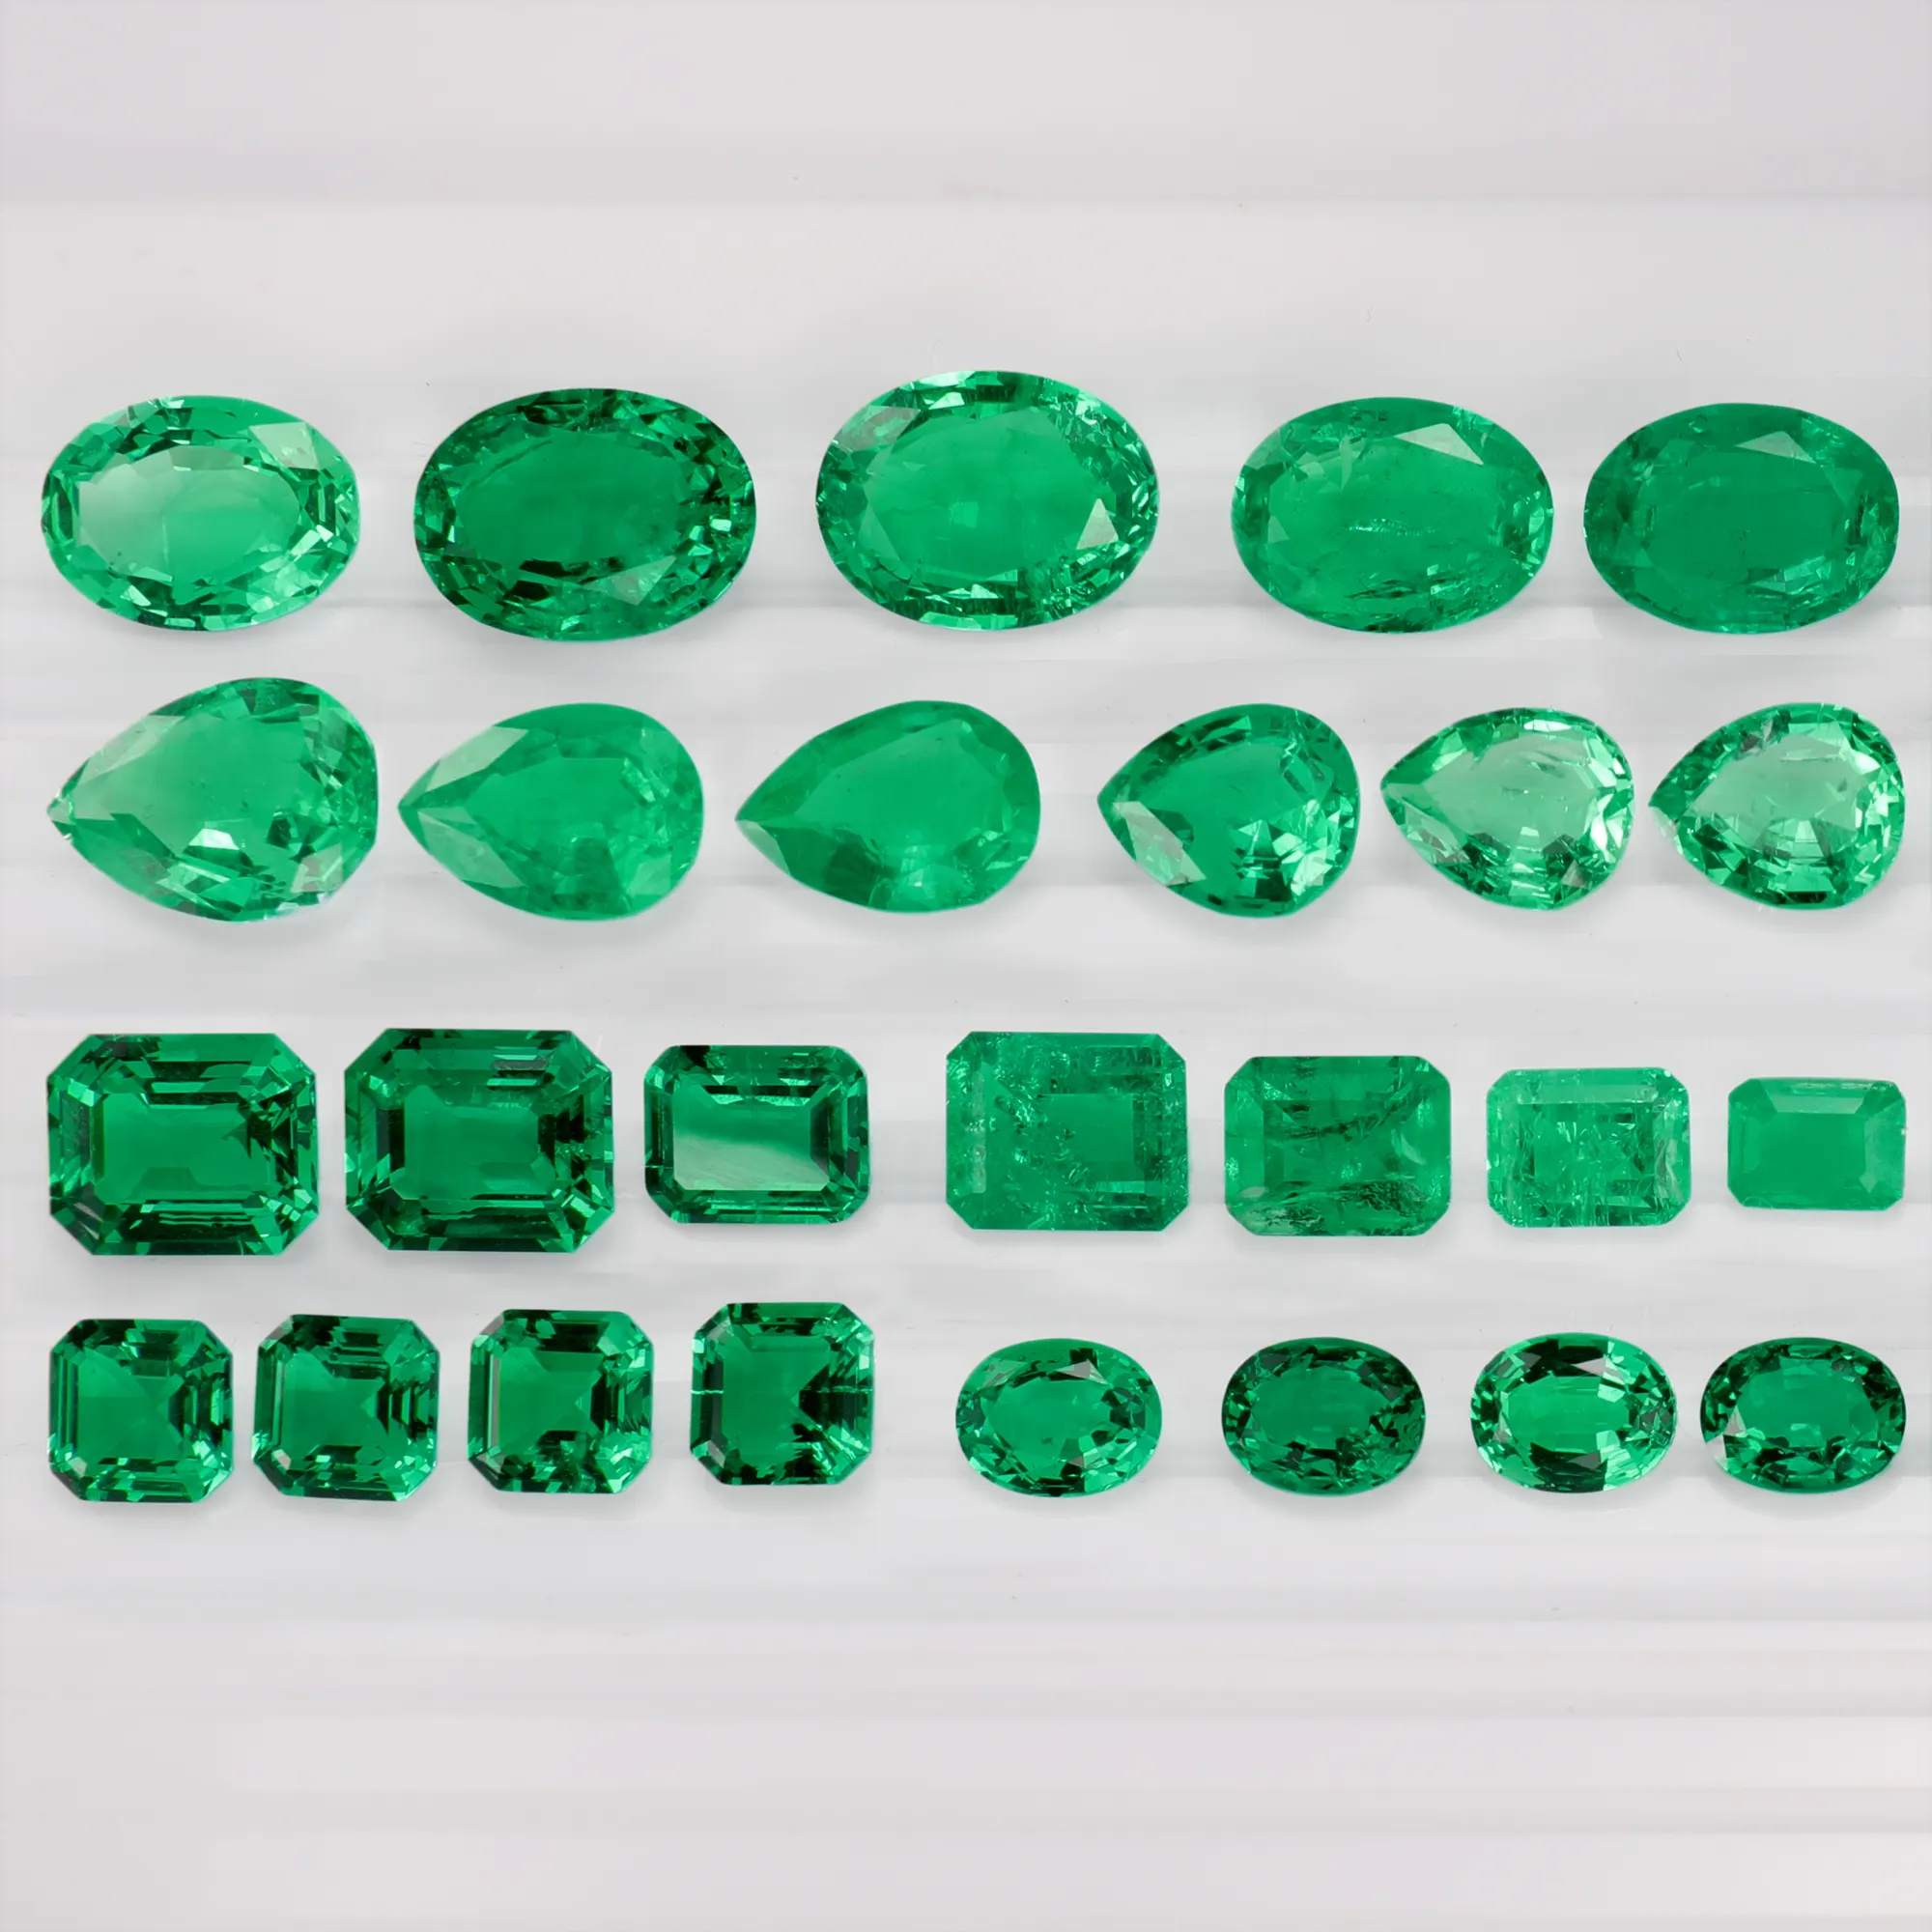 Hailer-joyería al por mayor, Esmeralda hidrotérmica certificada GRA, laboratorio verde colombiano, Esmeralda cultivada, piedras preciosas sueltas